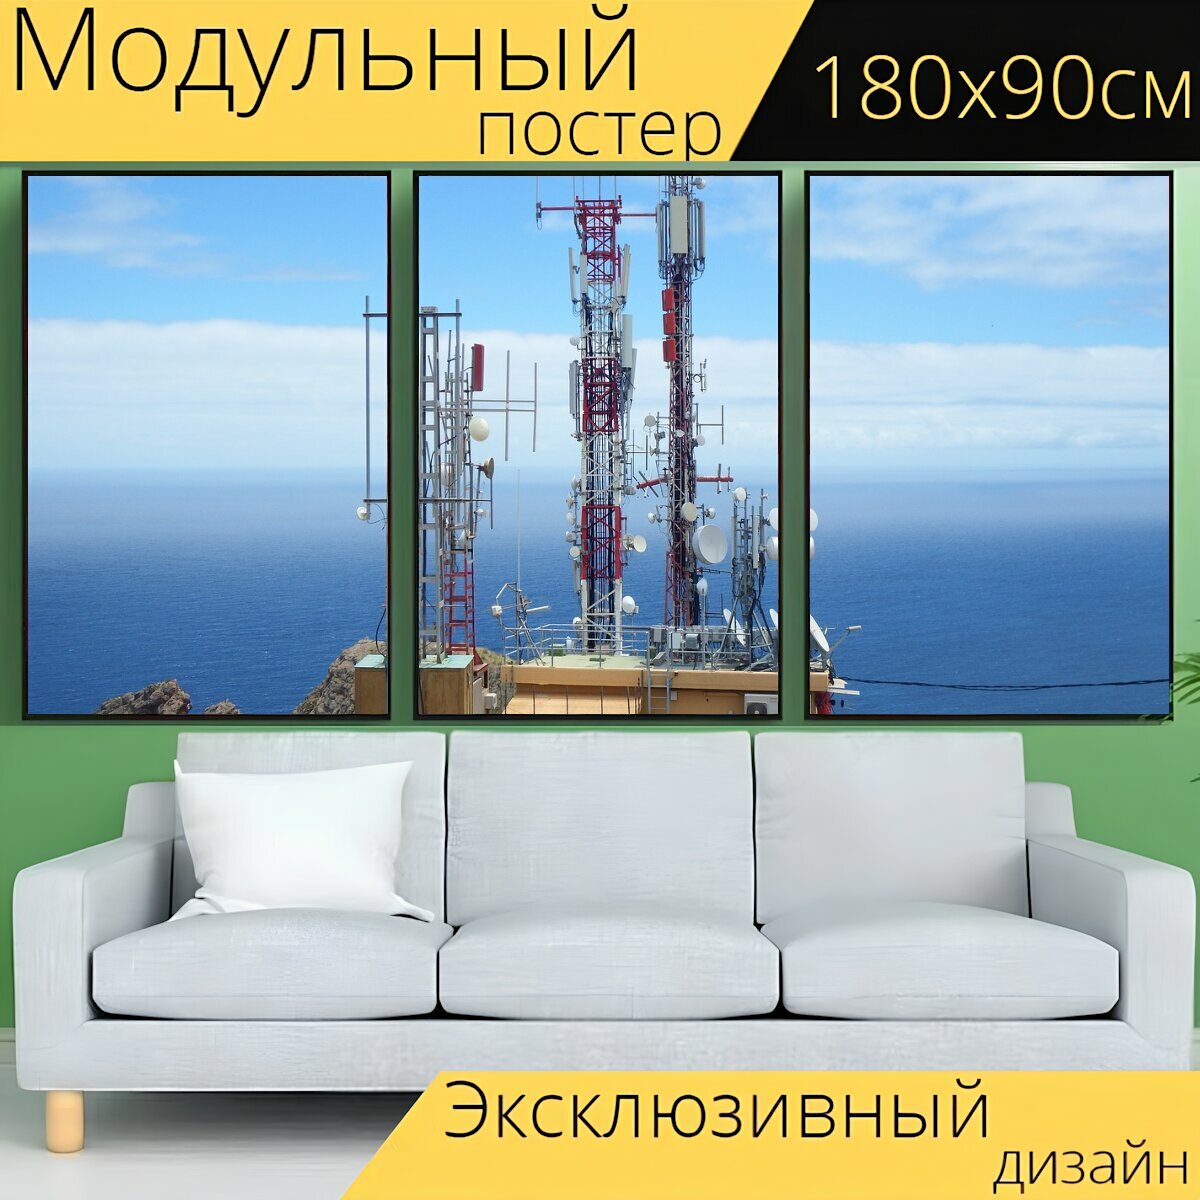 Модульный постер "Антенна, телефония, телевидение" 180 x 90 см. для интерьера